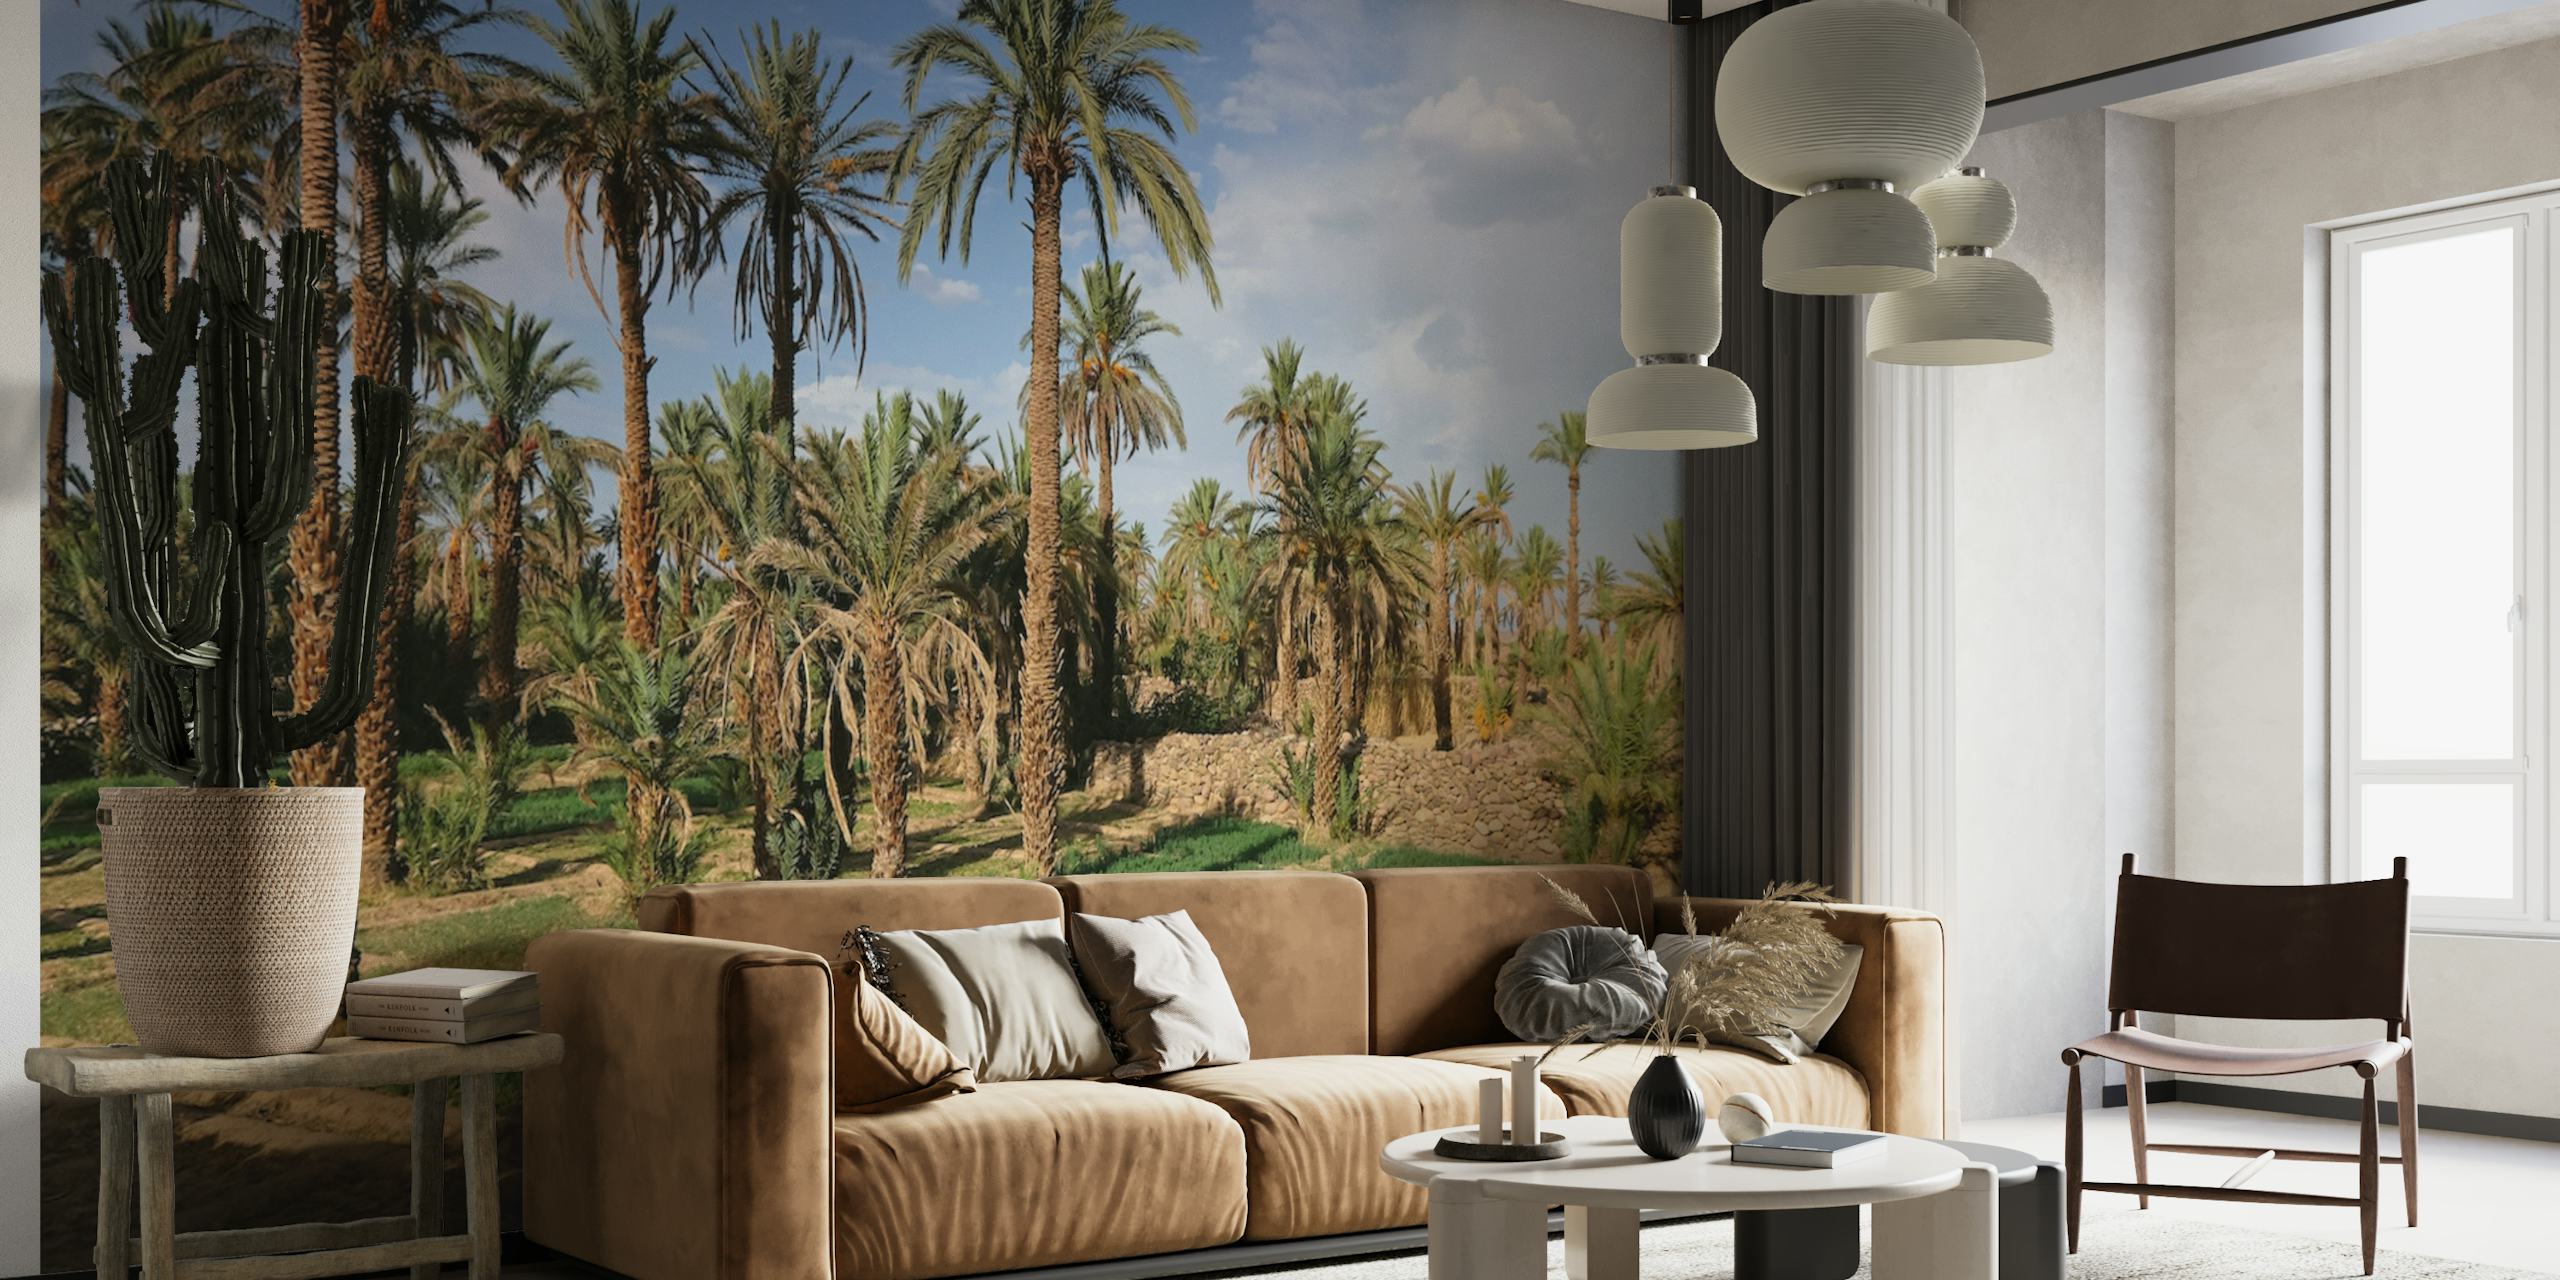 Fototapeta Palmtree Oasis w Maroku przedstawiająca spokojny gaj z bujnymi palmami i zielonym runem